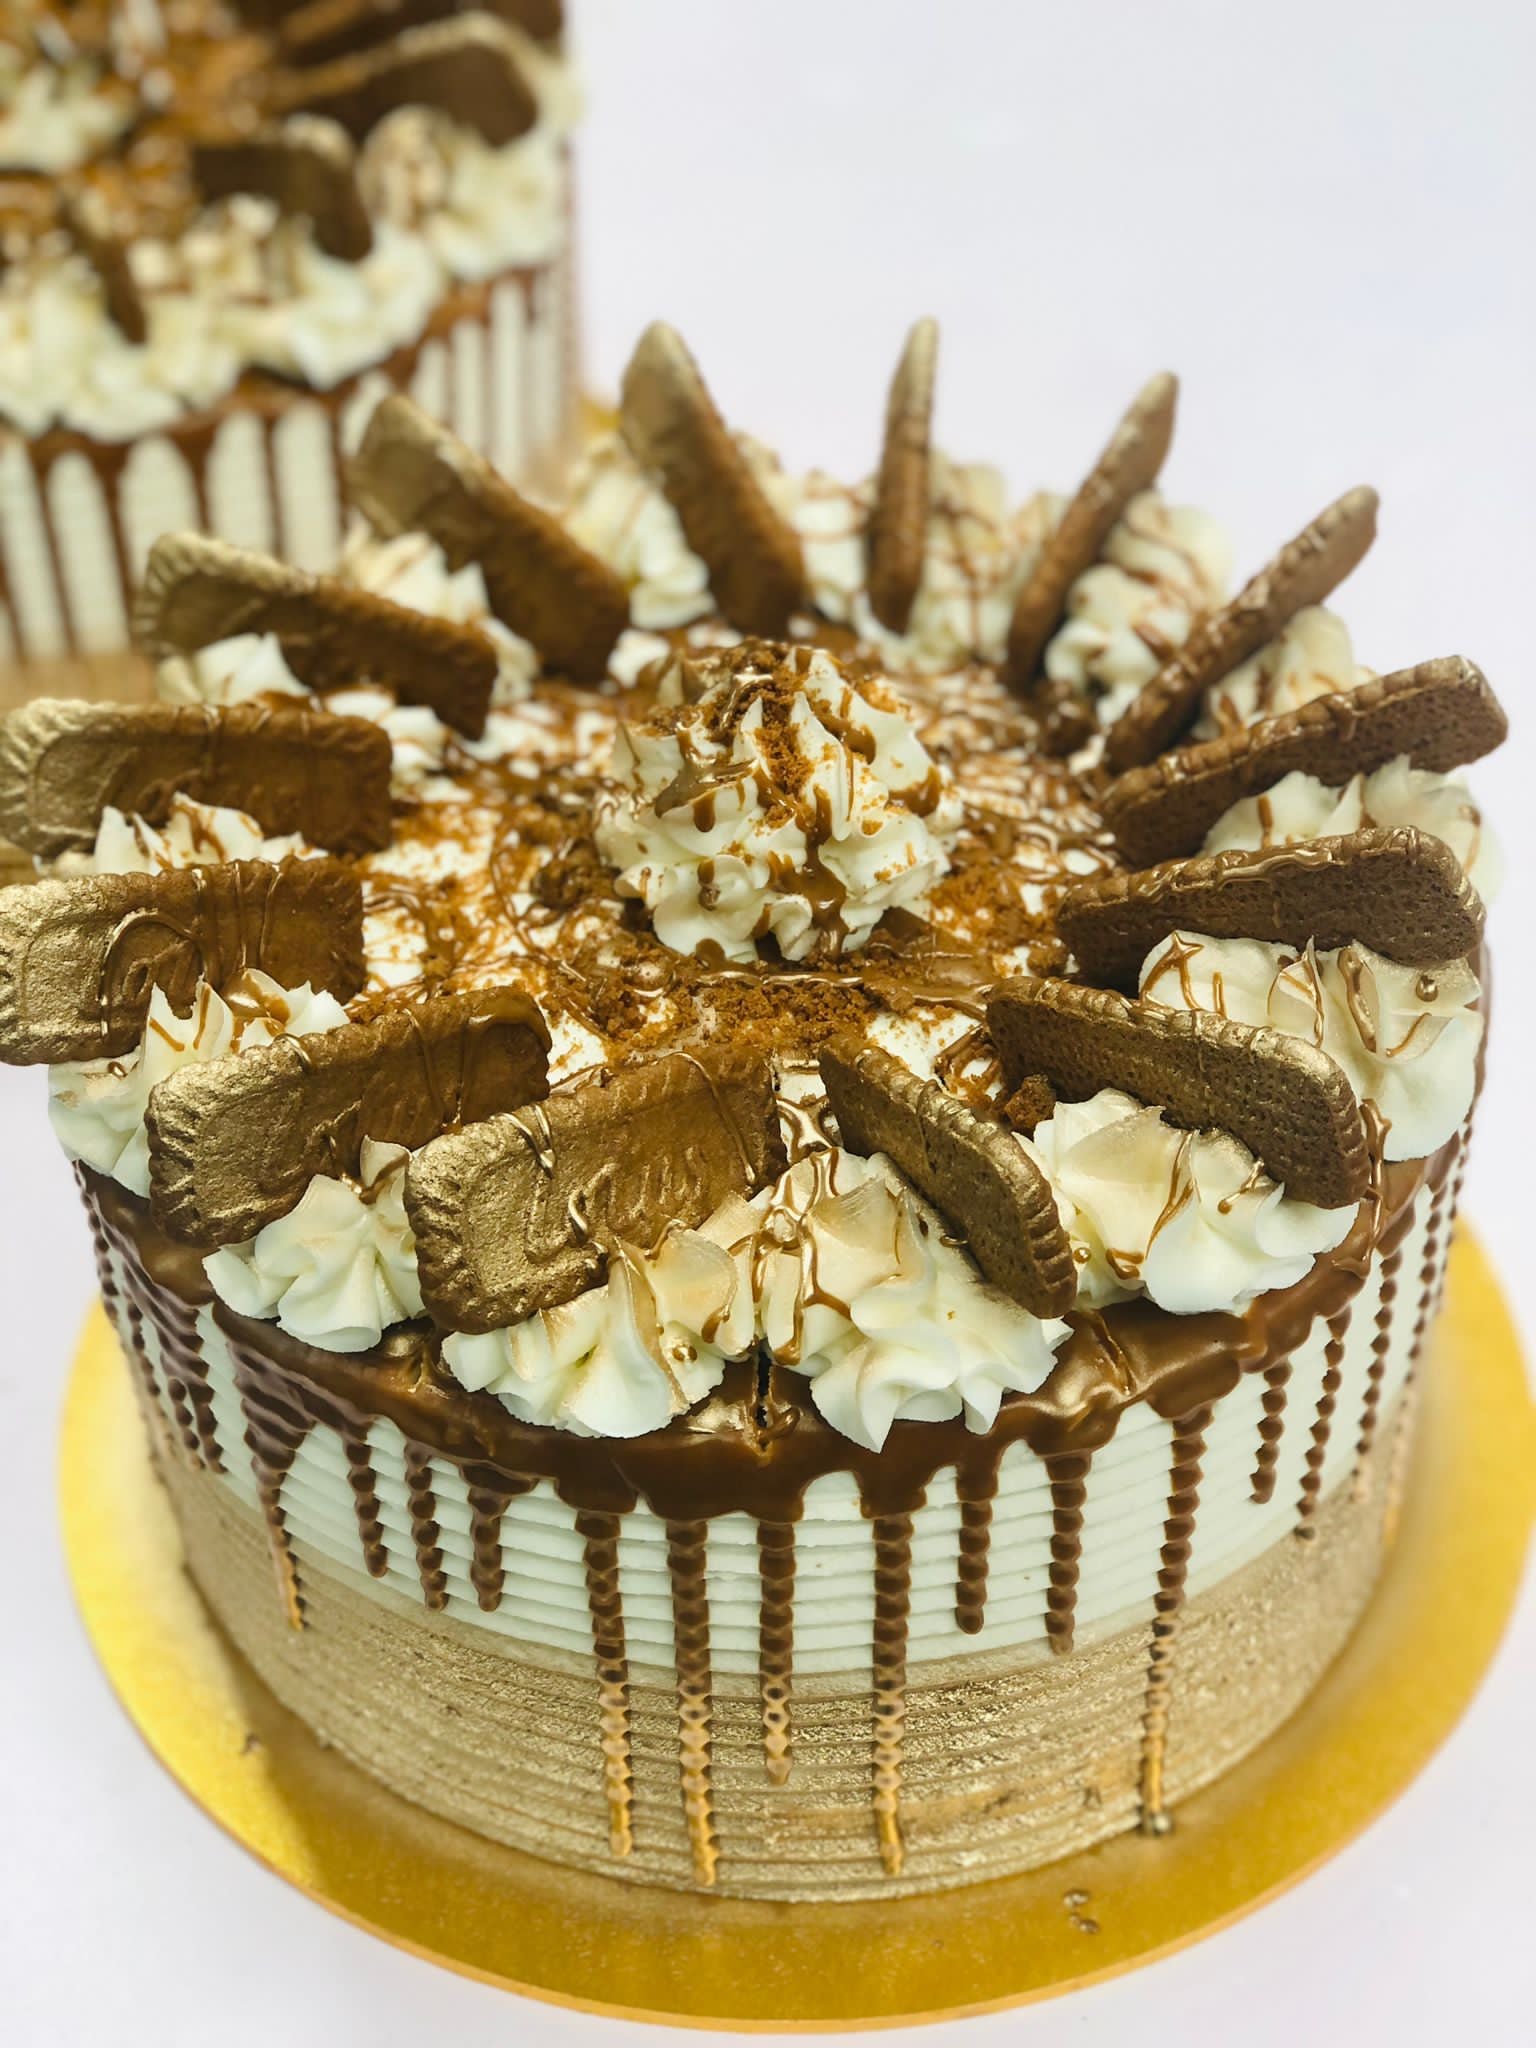 Chocolate Flower Cake | Yummy cakes, Cake recipes, Cake decorating